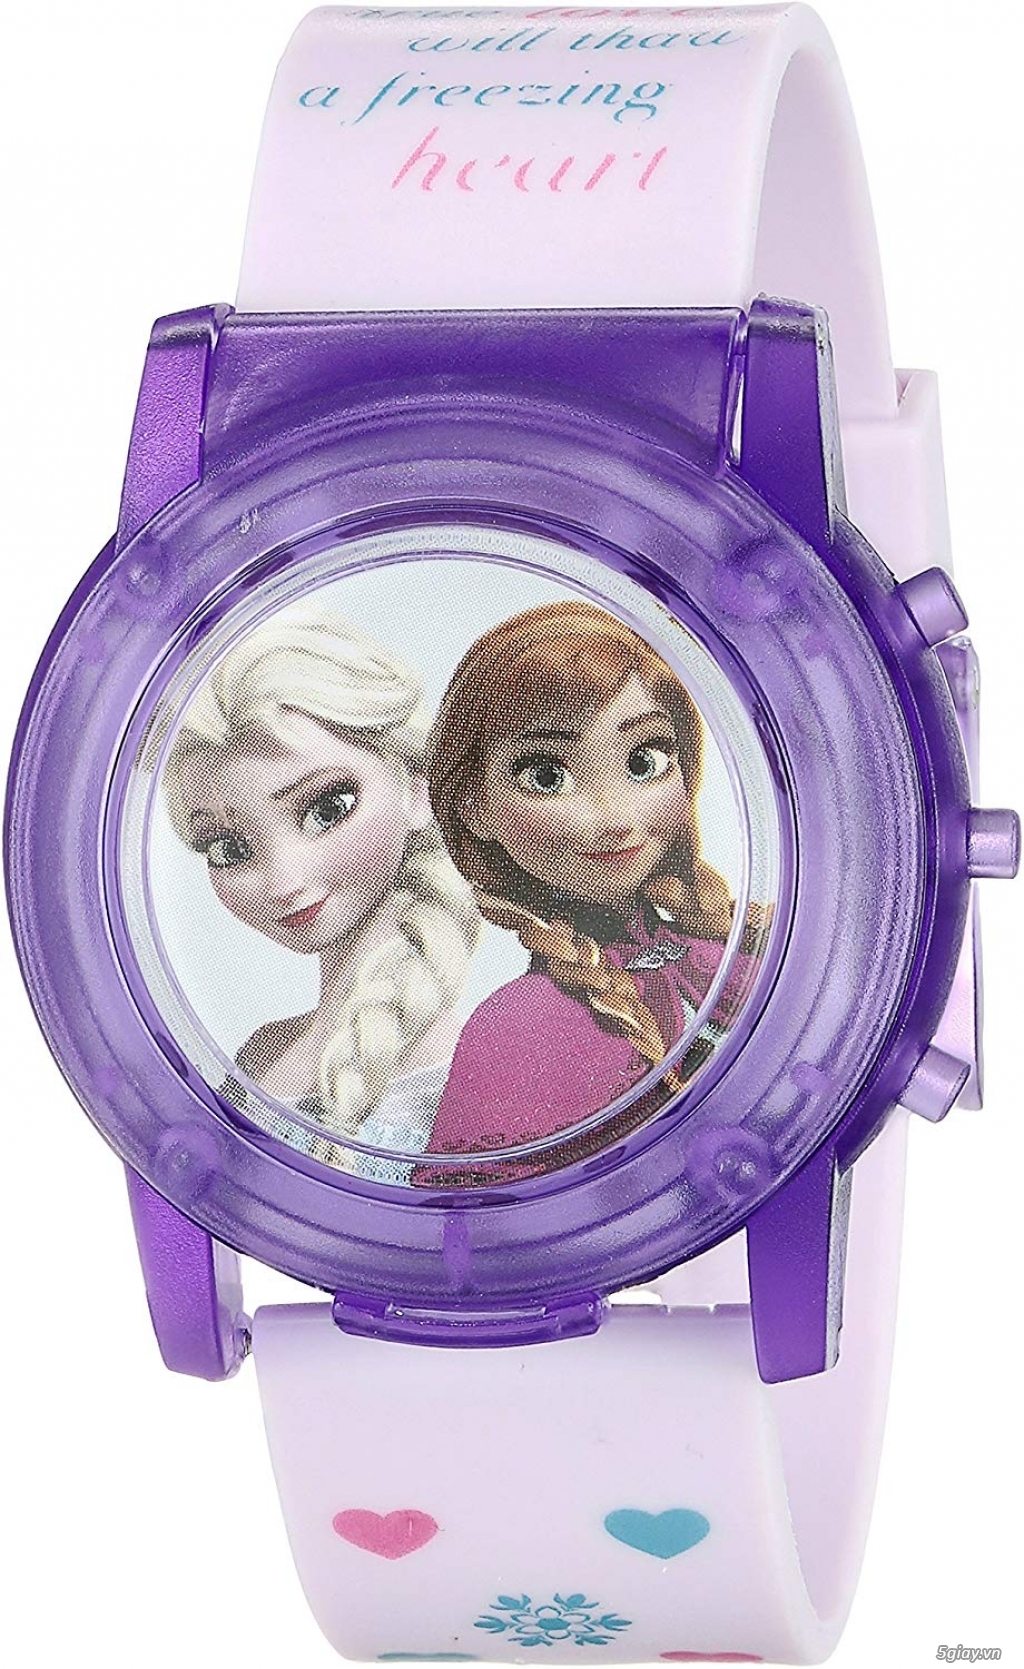 Bán đồng hồ chính hãng Disney ship USA dành cho bé gái - 5